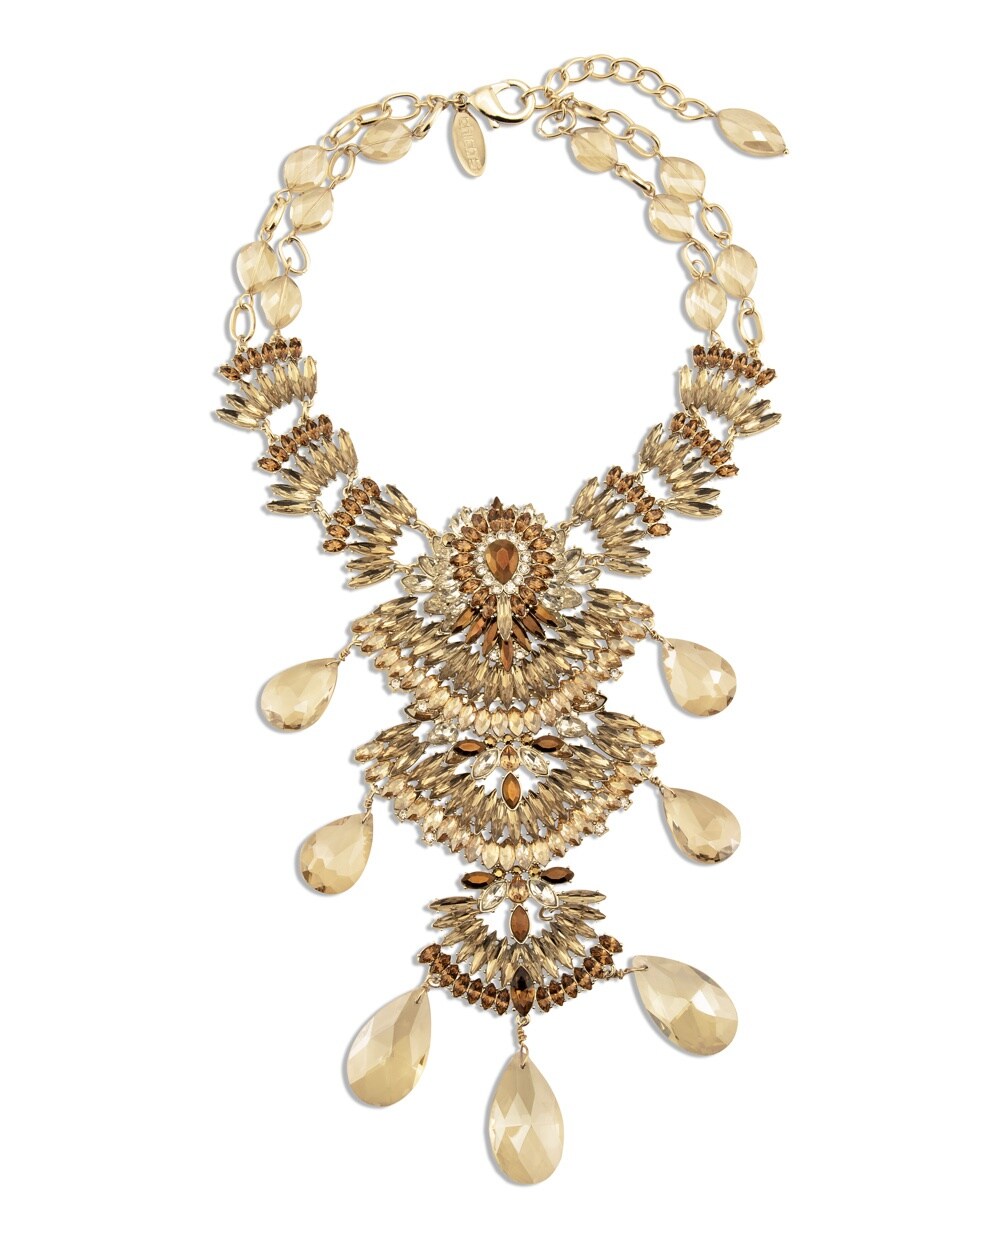 The Collectibles Paris Necklace